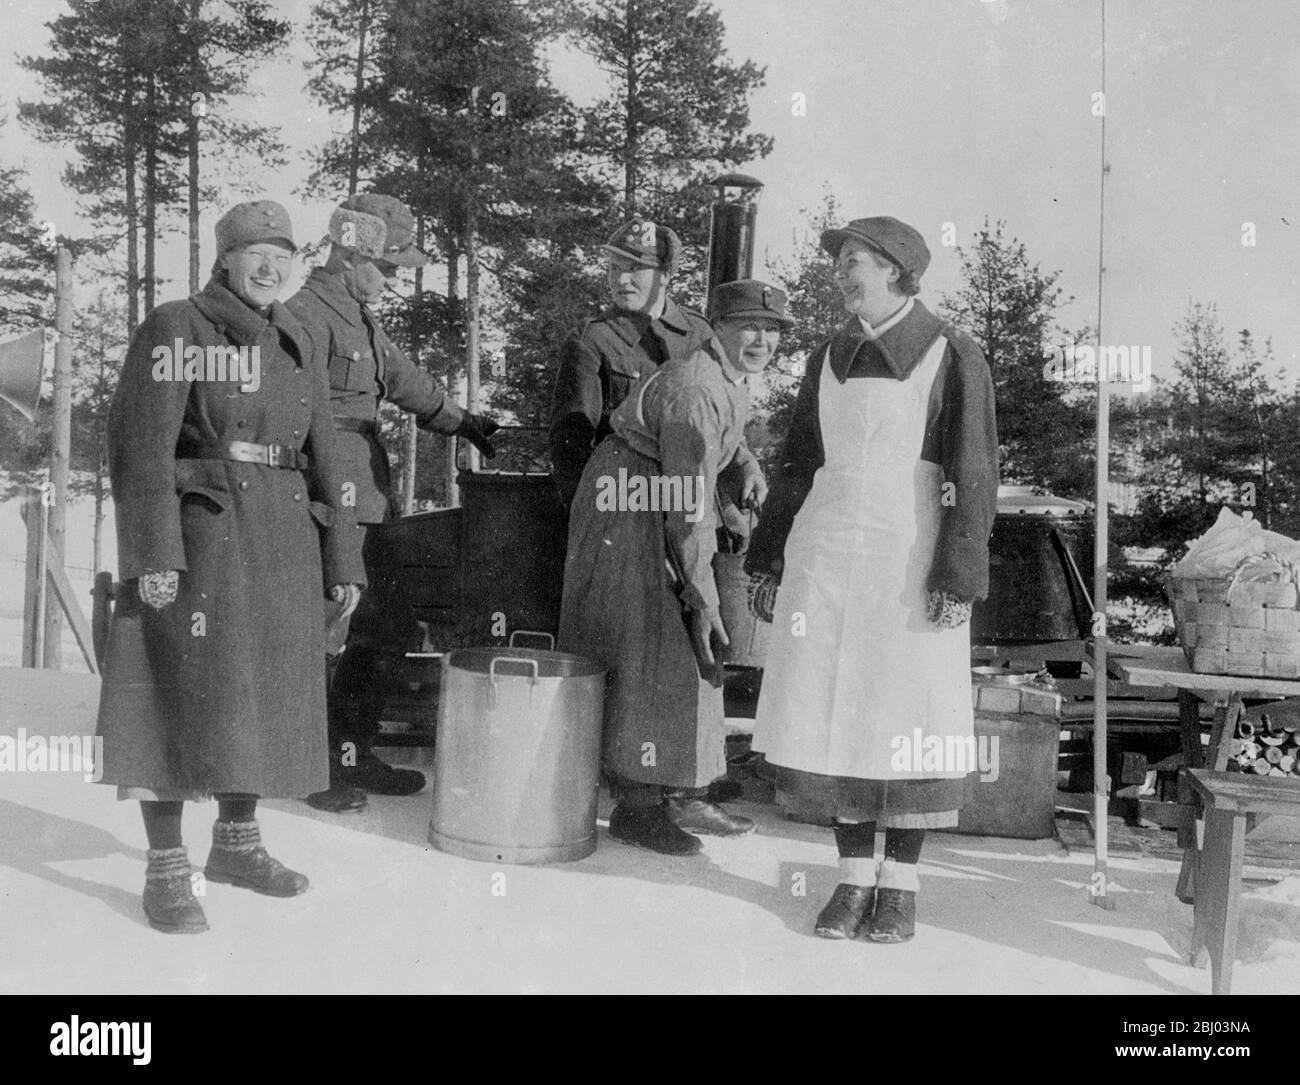 Frauen "Soldiers" von Finnland. - sie kochen in einer Feldküche!. - militärische uniformierte Mitglieder der 'Lottas', der finnischen patriotischen Frauenorganisation, nutzen eine Feldküche, um die weibliche Pflicht zu erfüllen oder um Nahrung für die Teilnehmer der Ski-Weltmeisterschaften in Lahti, Finnland, zuzubereiten. - eine der Frauen trägt eine Schürze über ihrem Mantel. - 26. Februar 26 1938 Stockfoto